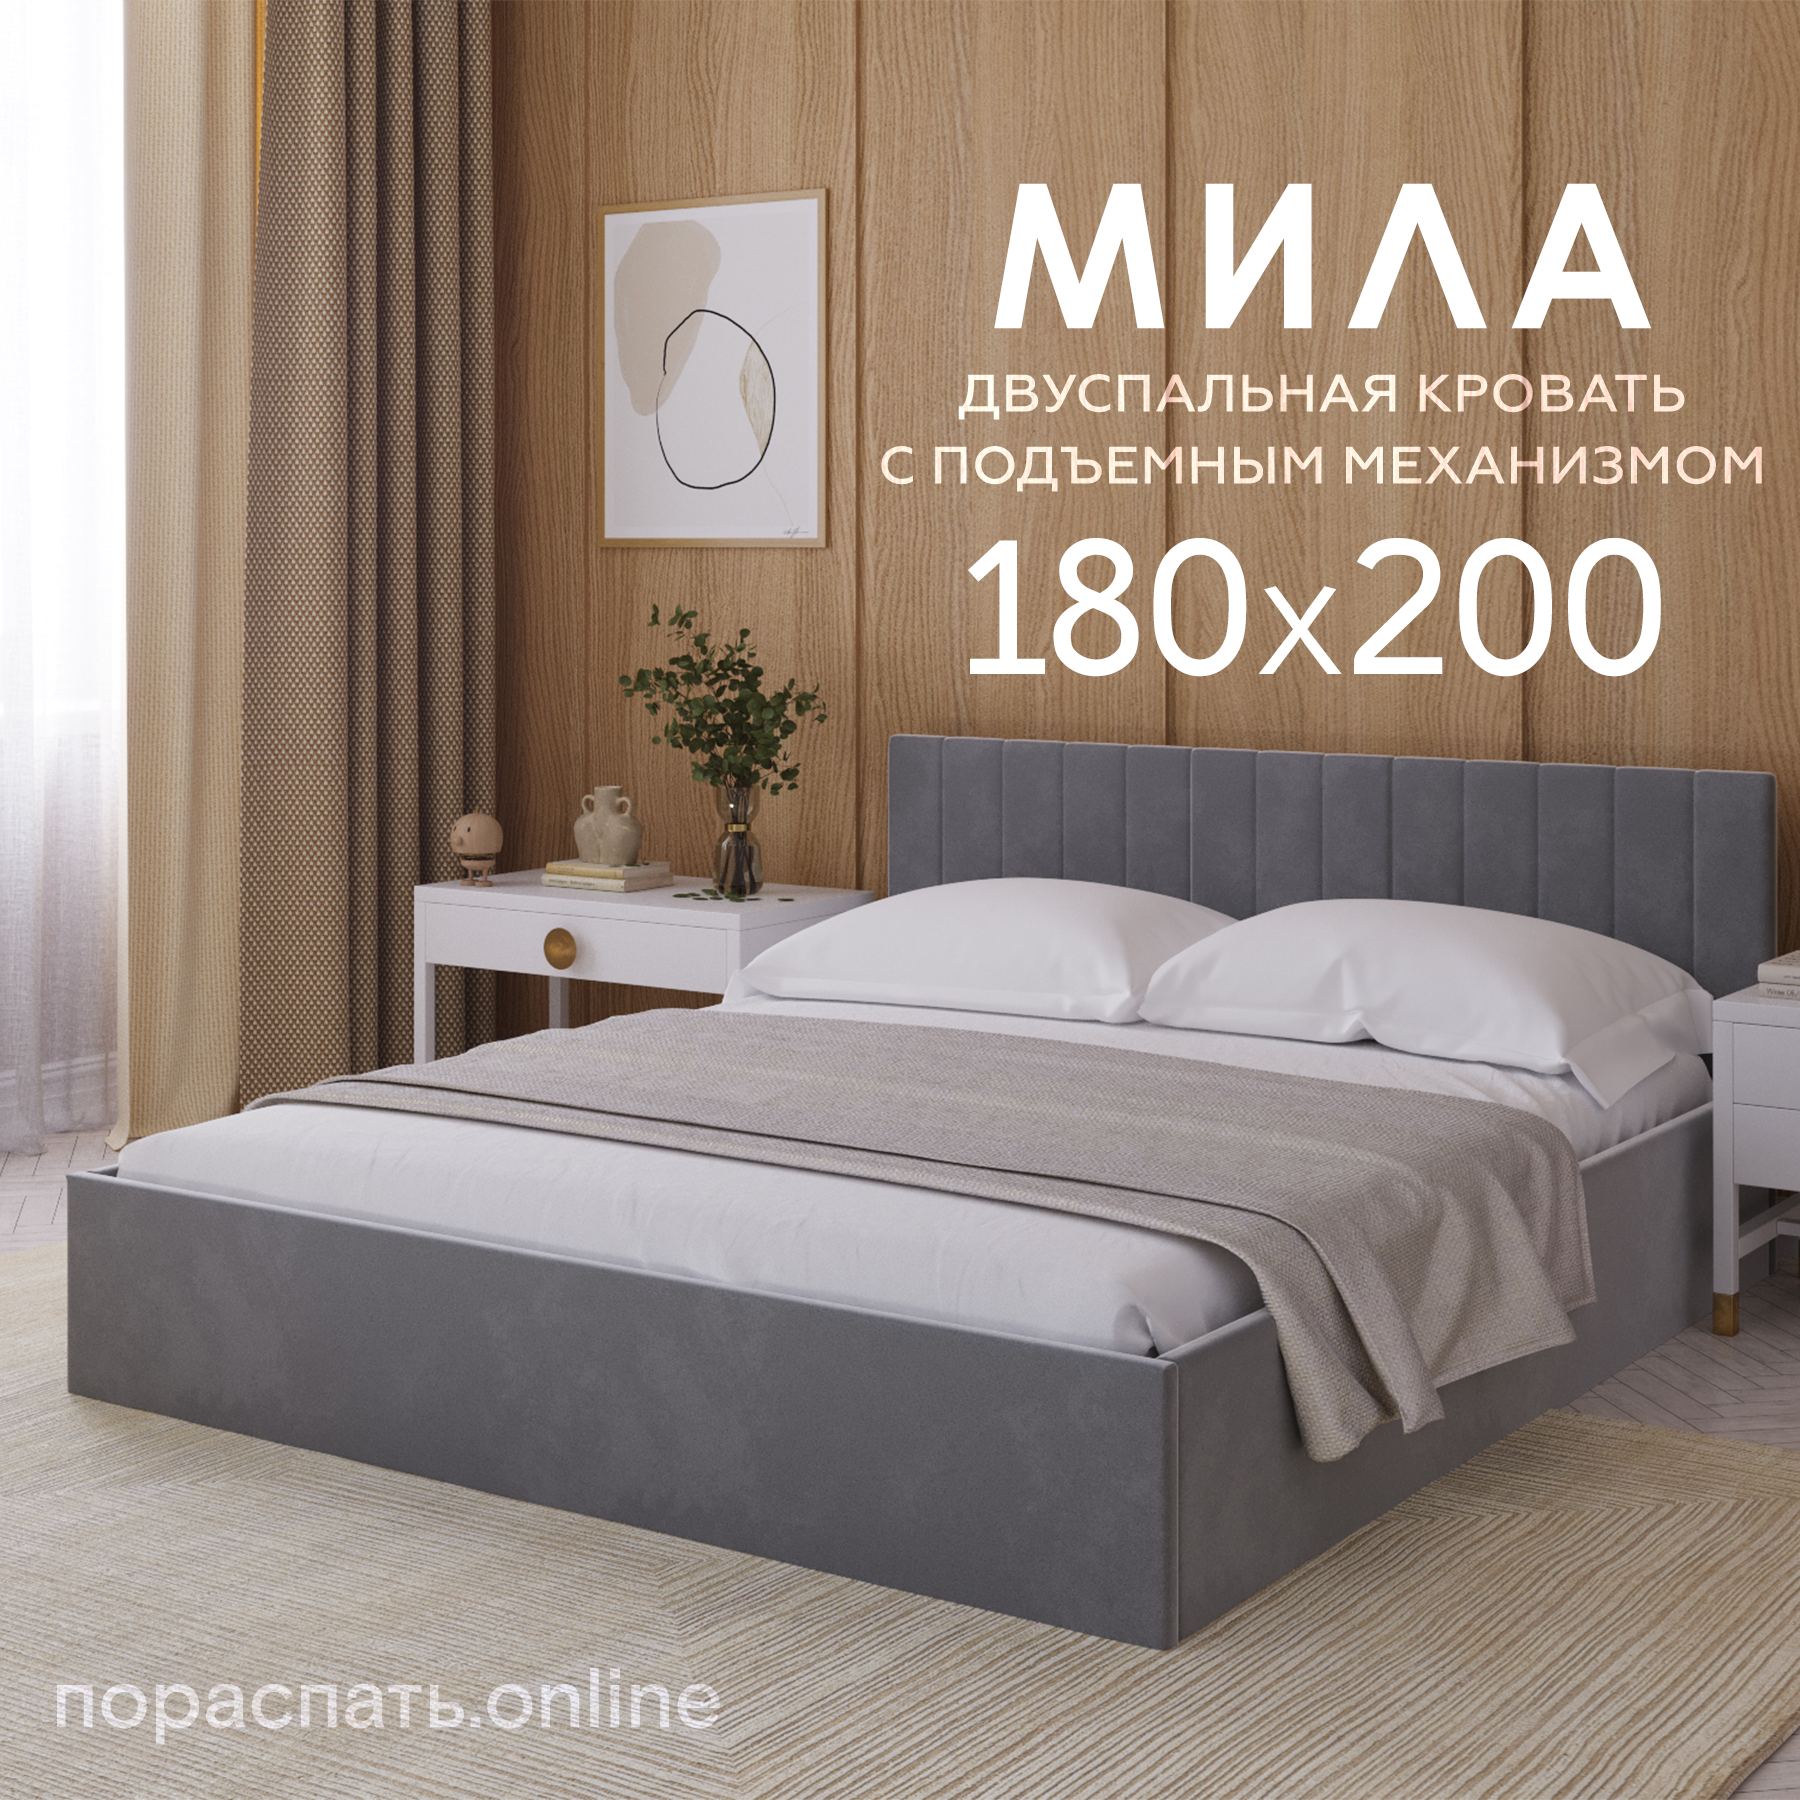 Двуспальная кровать Пора Спать, Мила, с подъемным механизмом, спальное место: 180х200см, габариты: 188х208см, цвет: серый